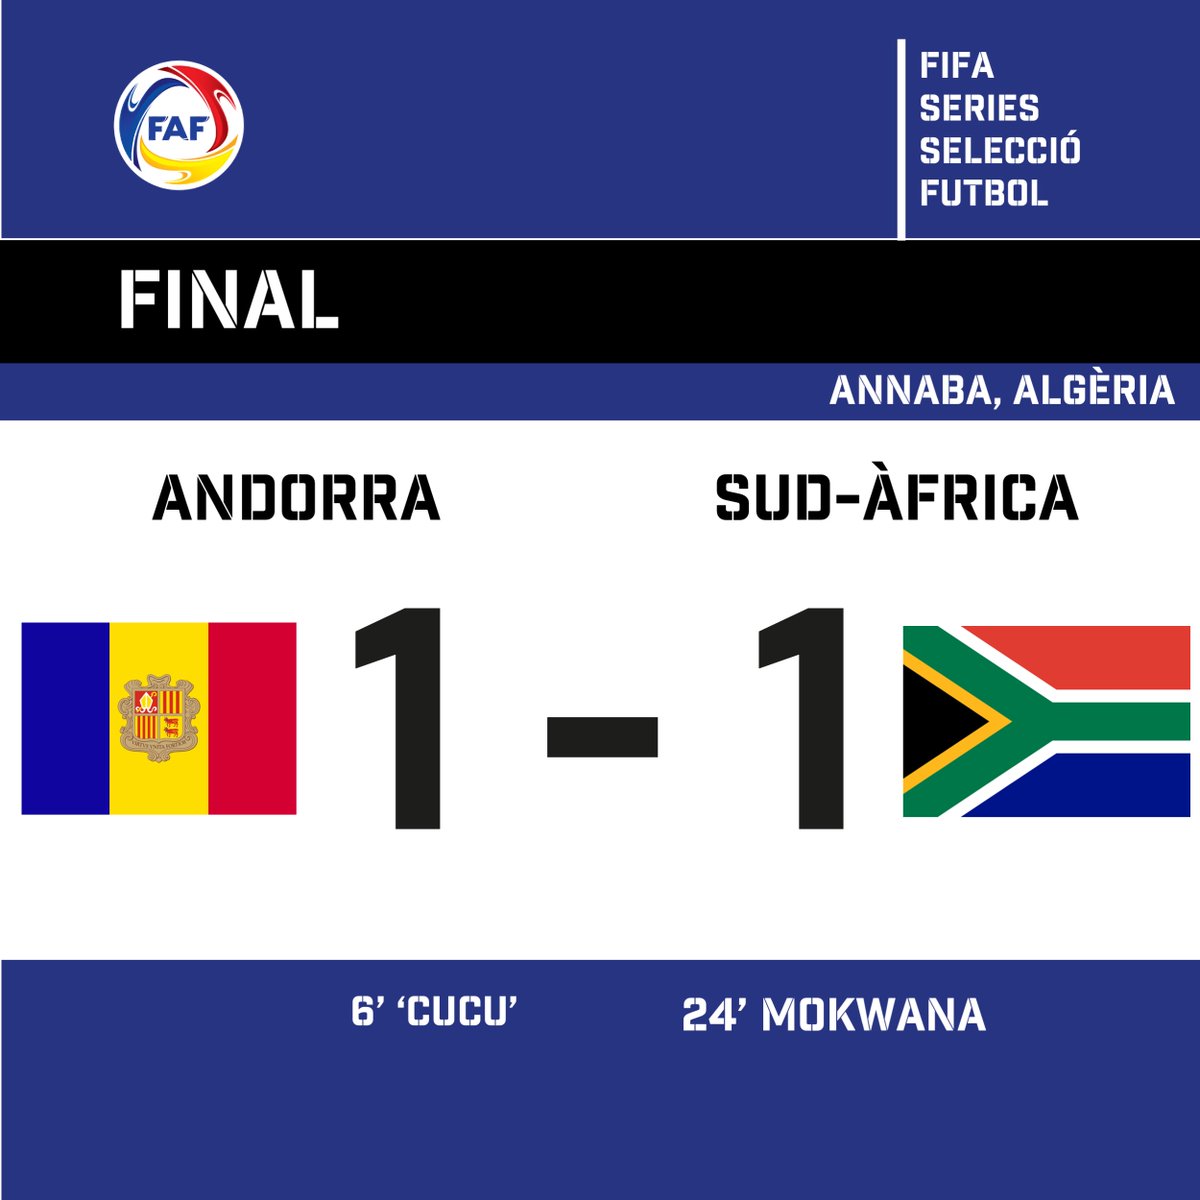 FINAAAAAAAL!!!!!! ➡️ Debut a les FIFA Series amb un gran empat contra Sud-Àfrica! 🇿🇦 ⏱️90' 🏆 FIFA SERIES 🇦🇩 @Fedandfut - 🇿🇦@BafanaBafana (1-1) ⚽️ 6' 'Cucu' ⚽️ 24' Mokwana 🔜 Proper partit: 🇧🇴 Contra Bolívia, dilluns a les 22.00h #⃣ #SomAndorra